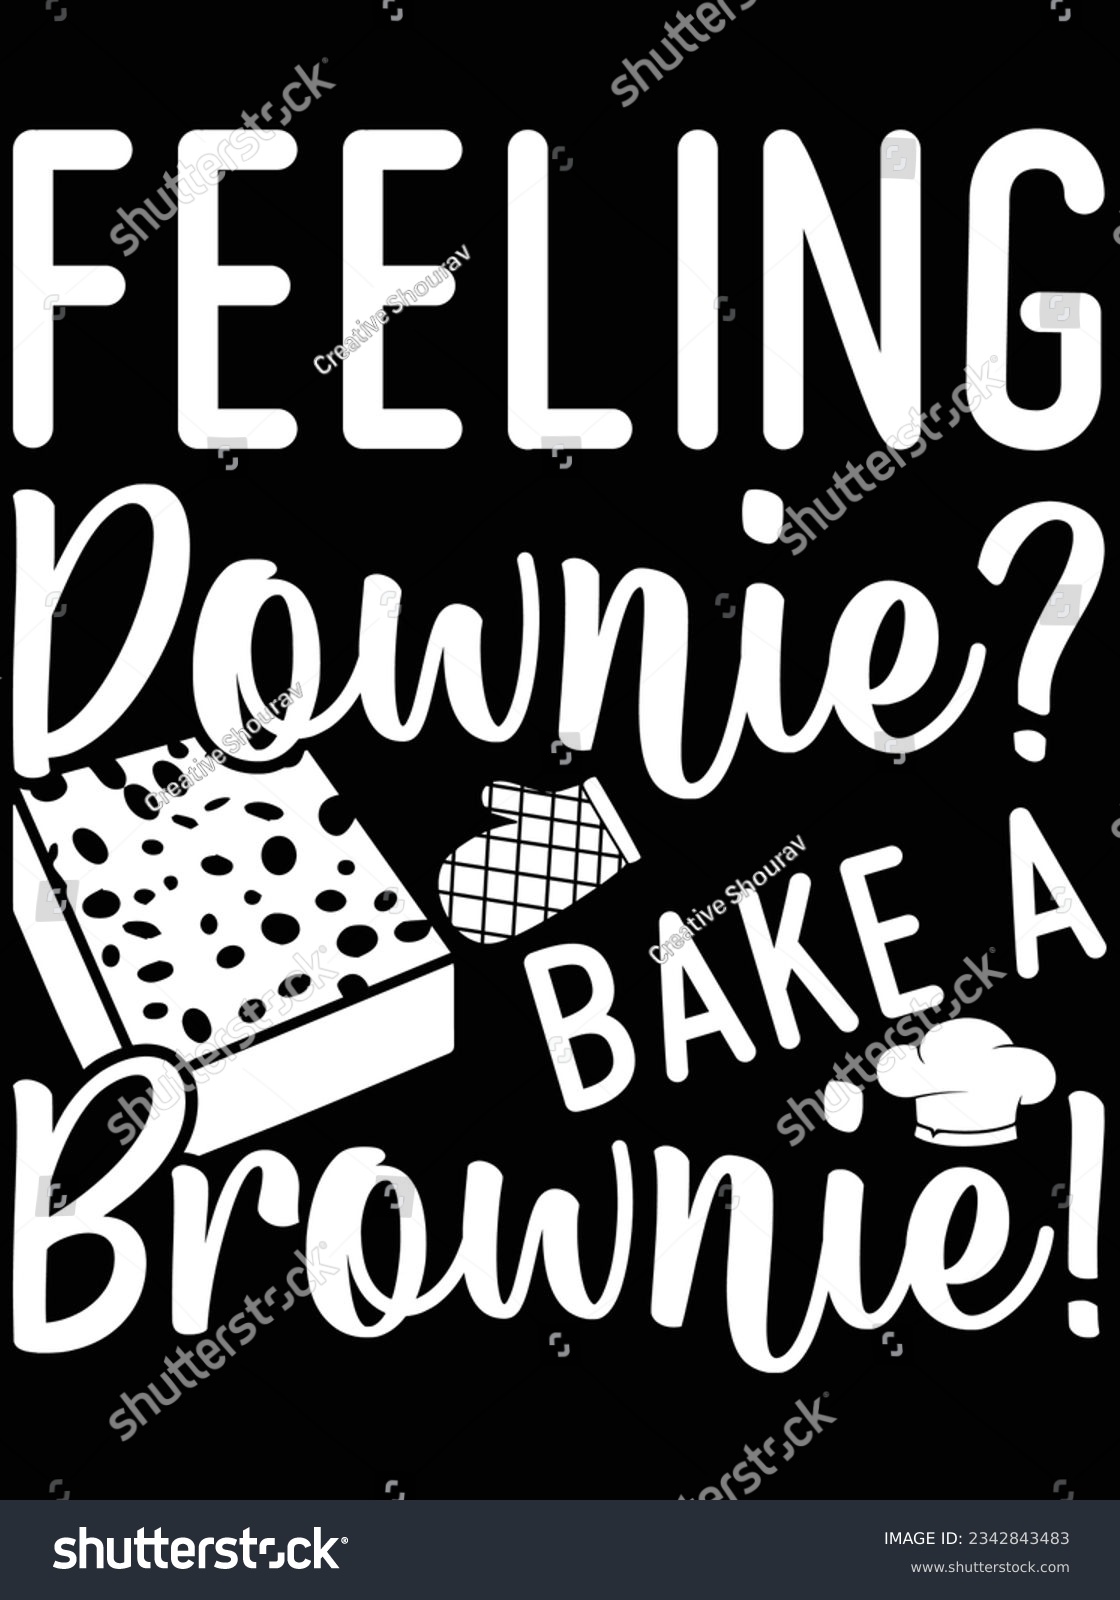 SVG of Feeling downie bake a brownie vector art design, eps file. design file for t-shirt. SVG, EPS cuttable design file svg